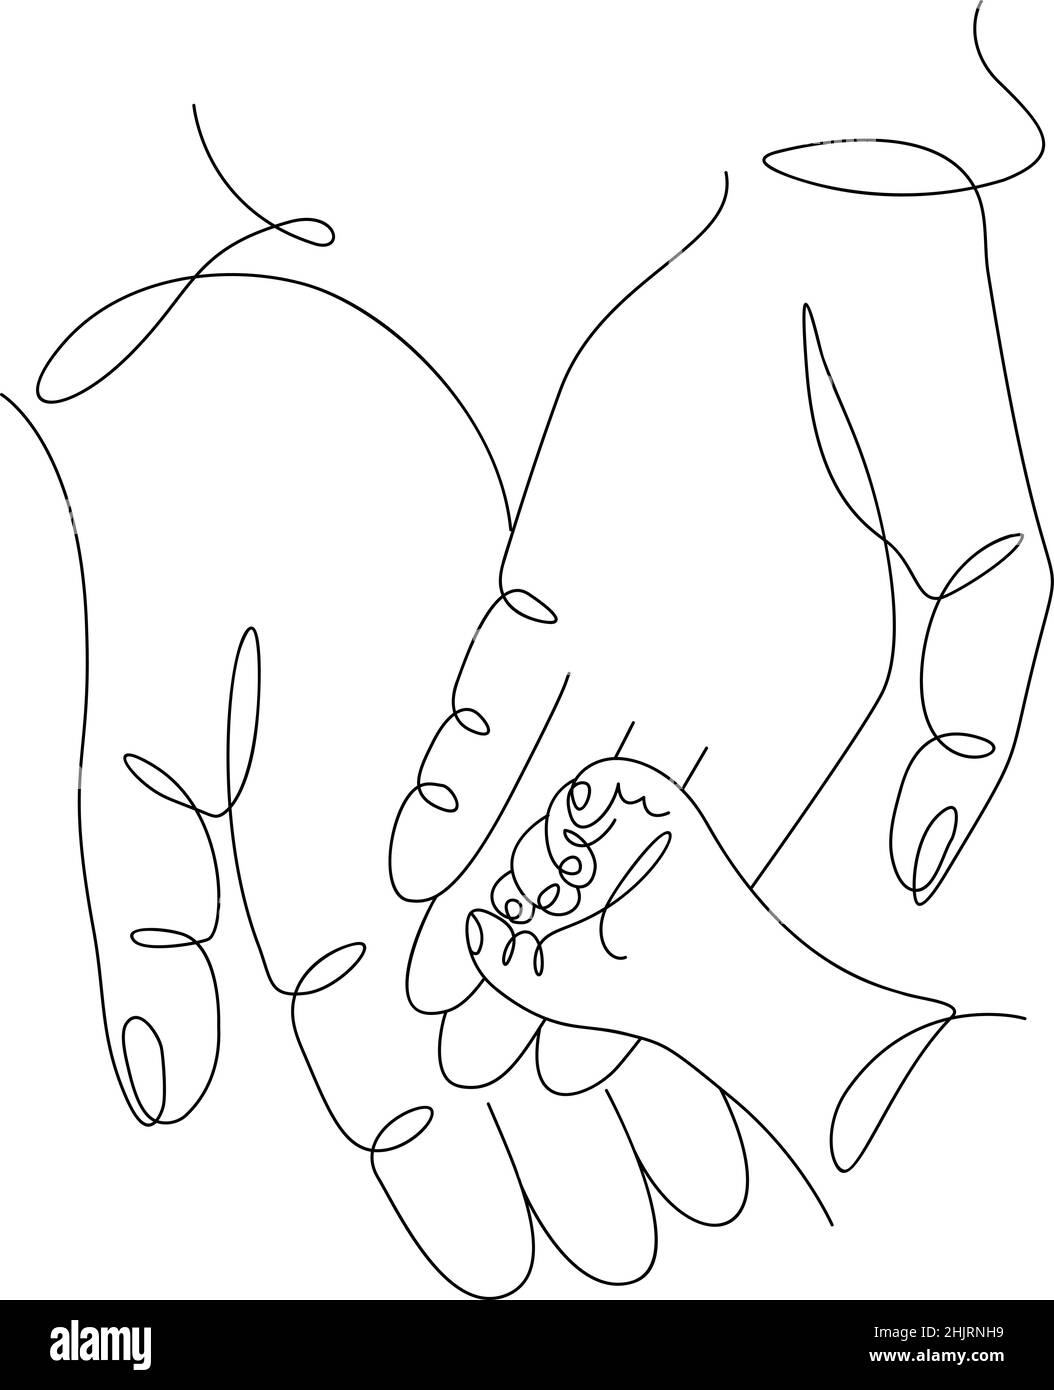 Eine kontinuierliche einzige Zeichnung Linie Kunst flach Doodle Menschen Hände, Mama lieben Papa und Baby, Mutter Vater. Isoliertes Bild, handgezeichnete Kontur auf Weiß Stock Vektor